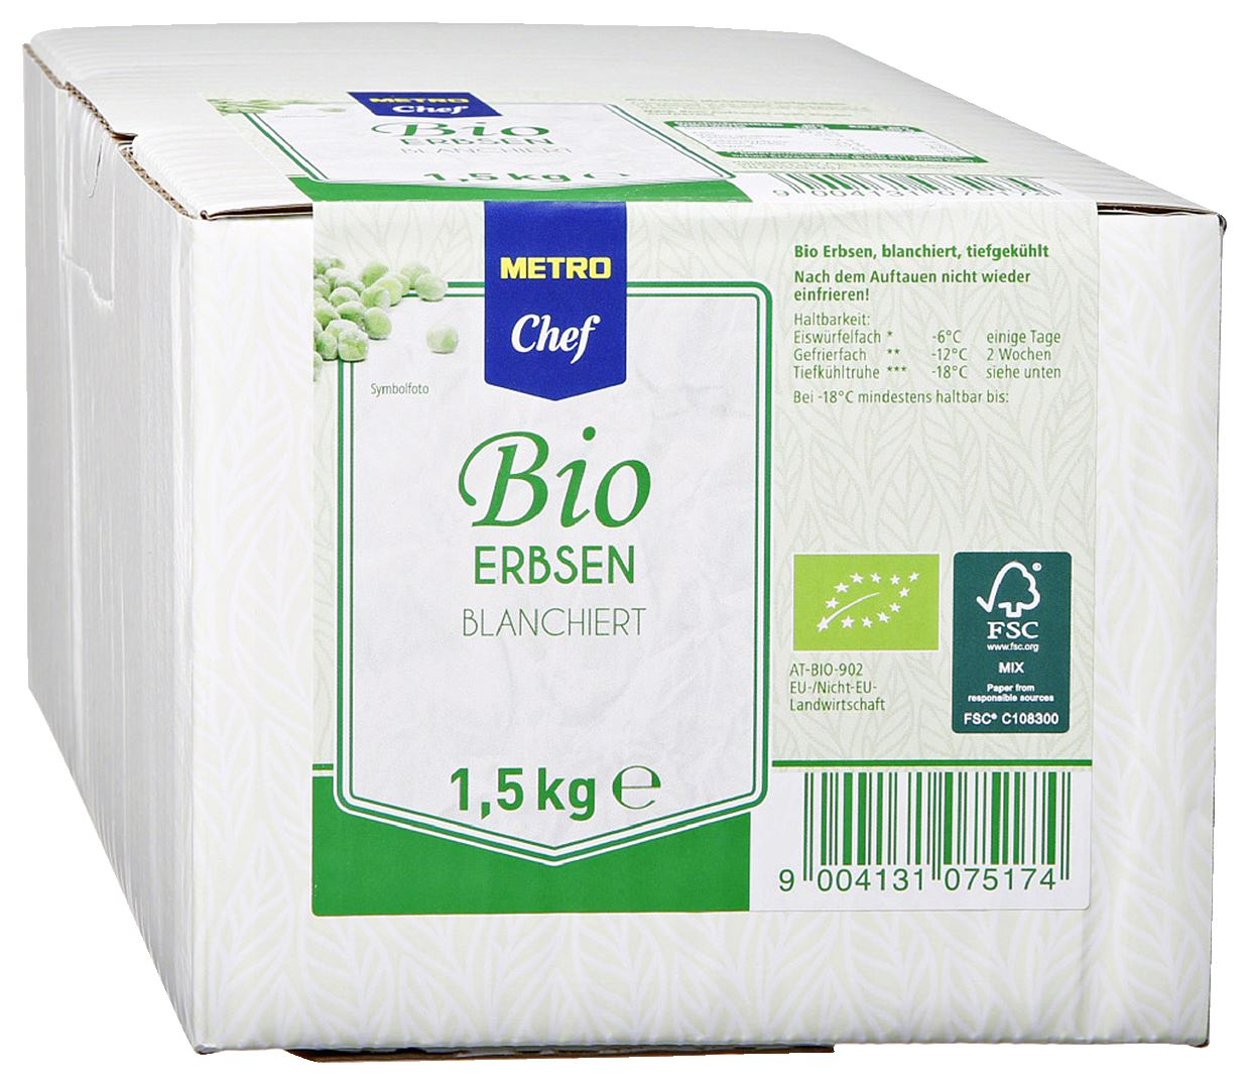 METRO Chef Bio - Erbsen tiefgefroren - 6 x 1,5 kg Karton